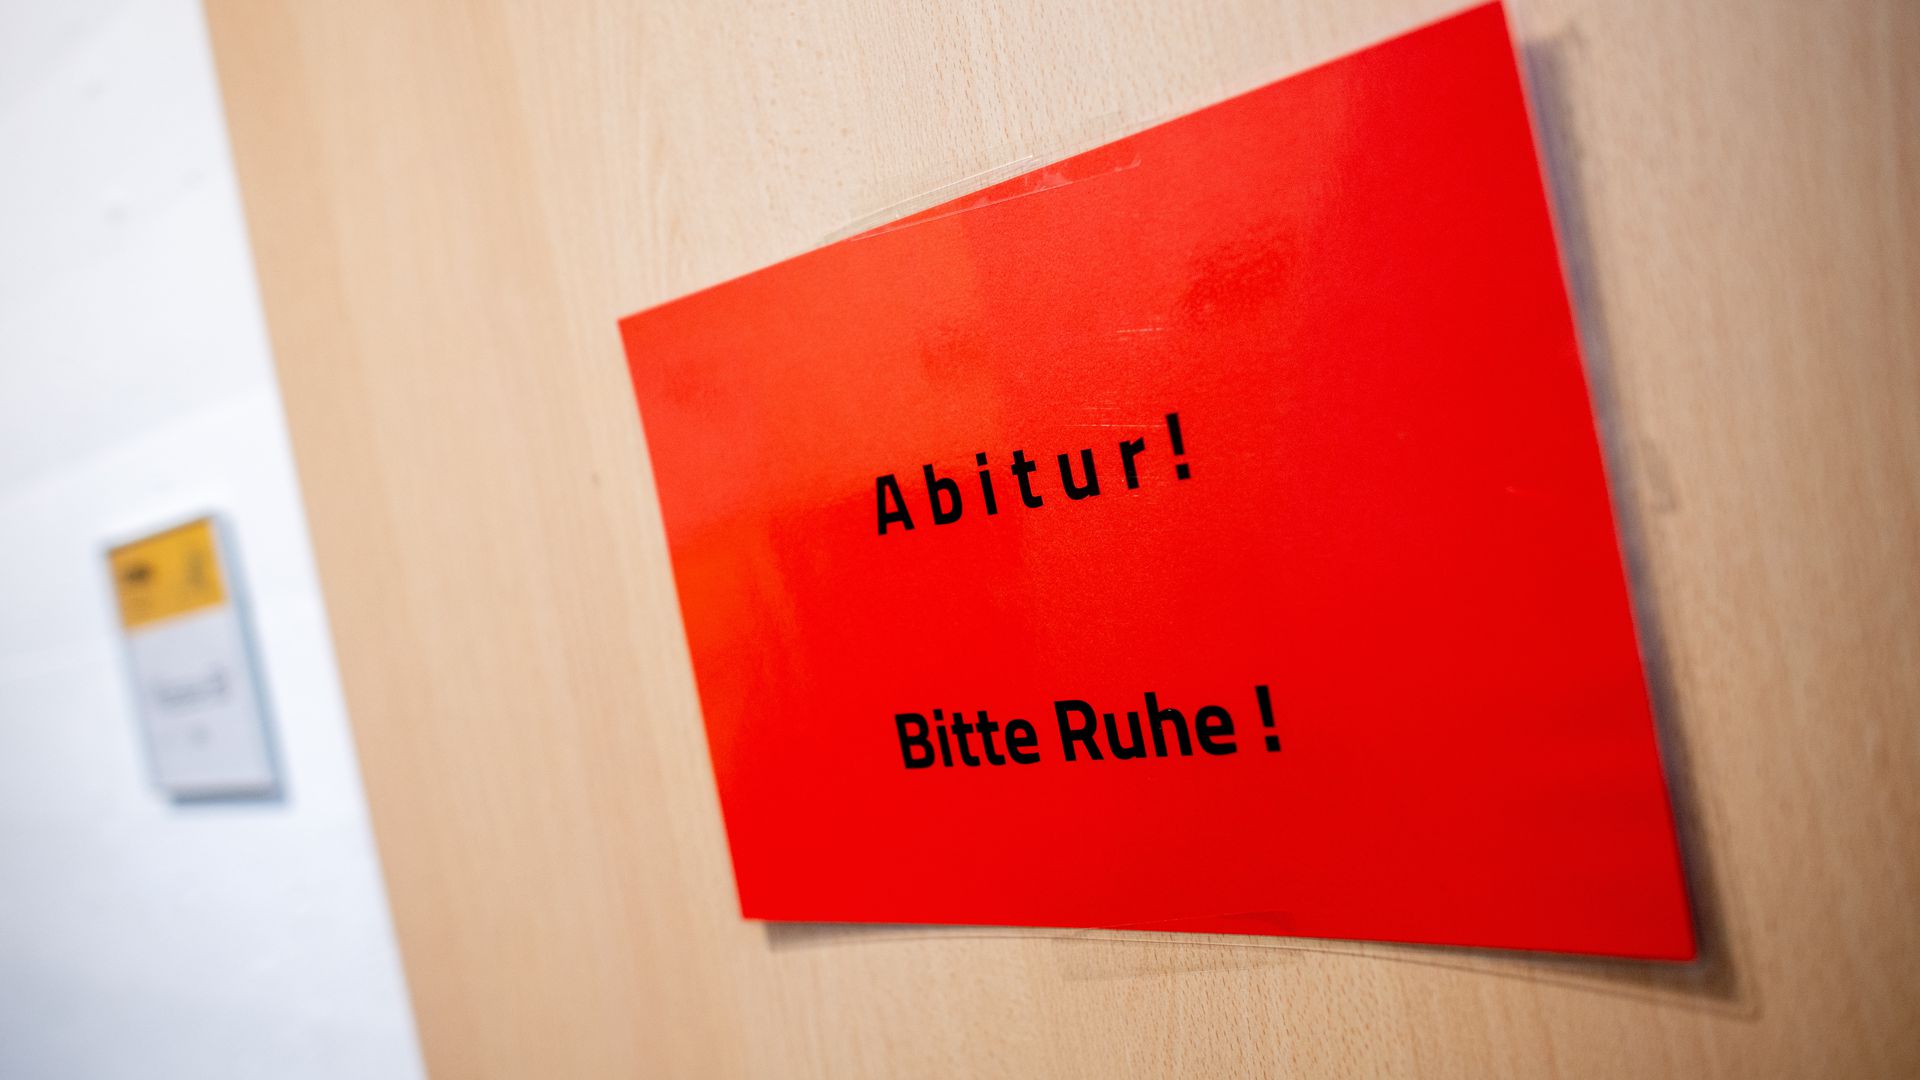 Ein Schild mit der Aufschrift "Abitur! Bitte Ruhe!" hängt während der schriftlichen Abiturprüfungen im Fach Geschichte an einer Tür in einer Schule.